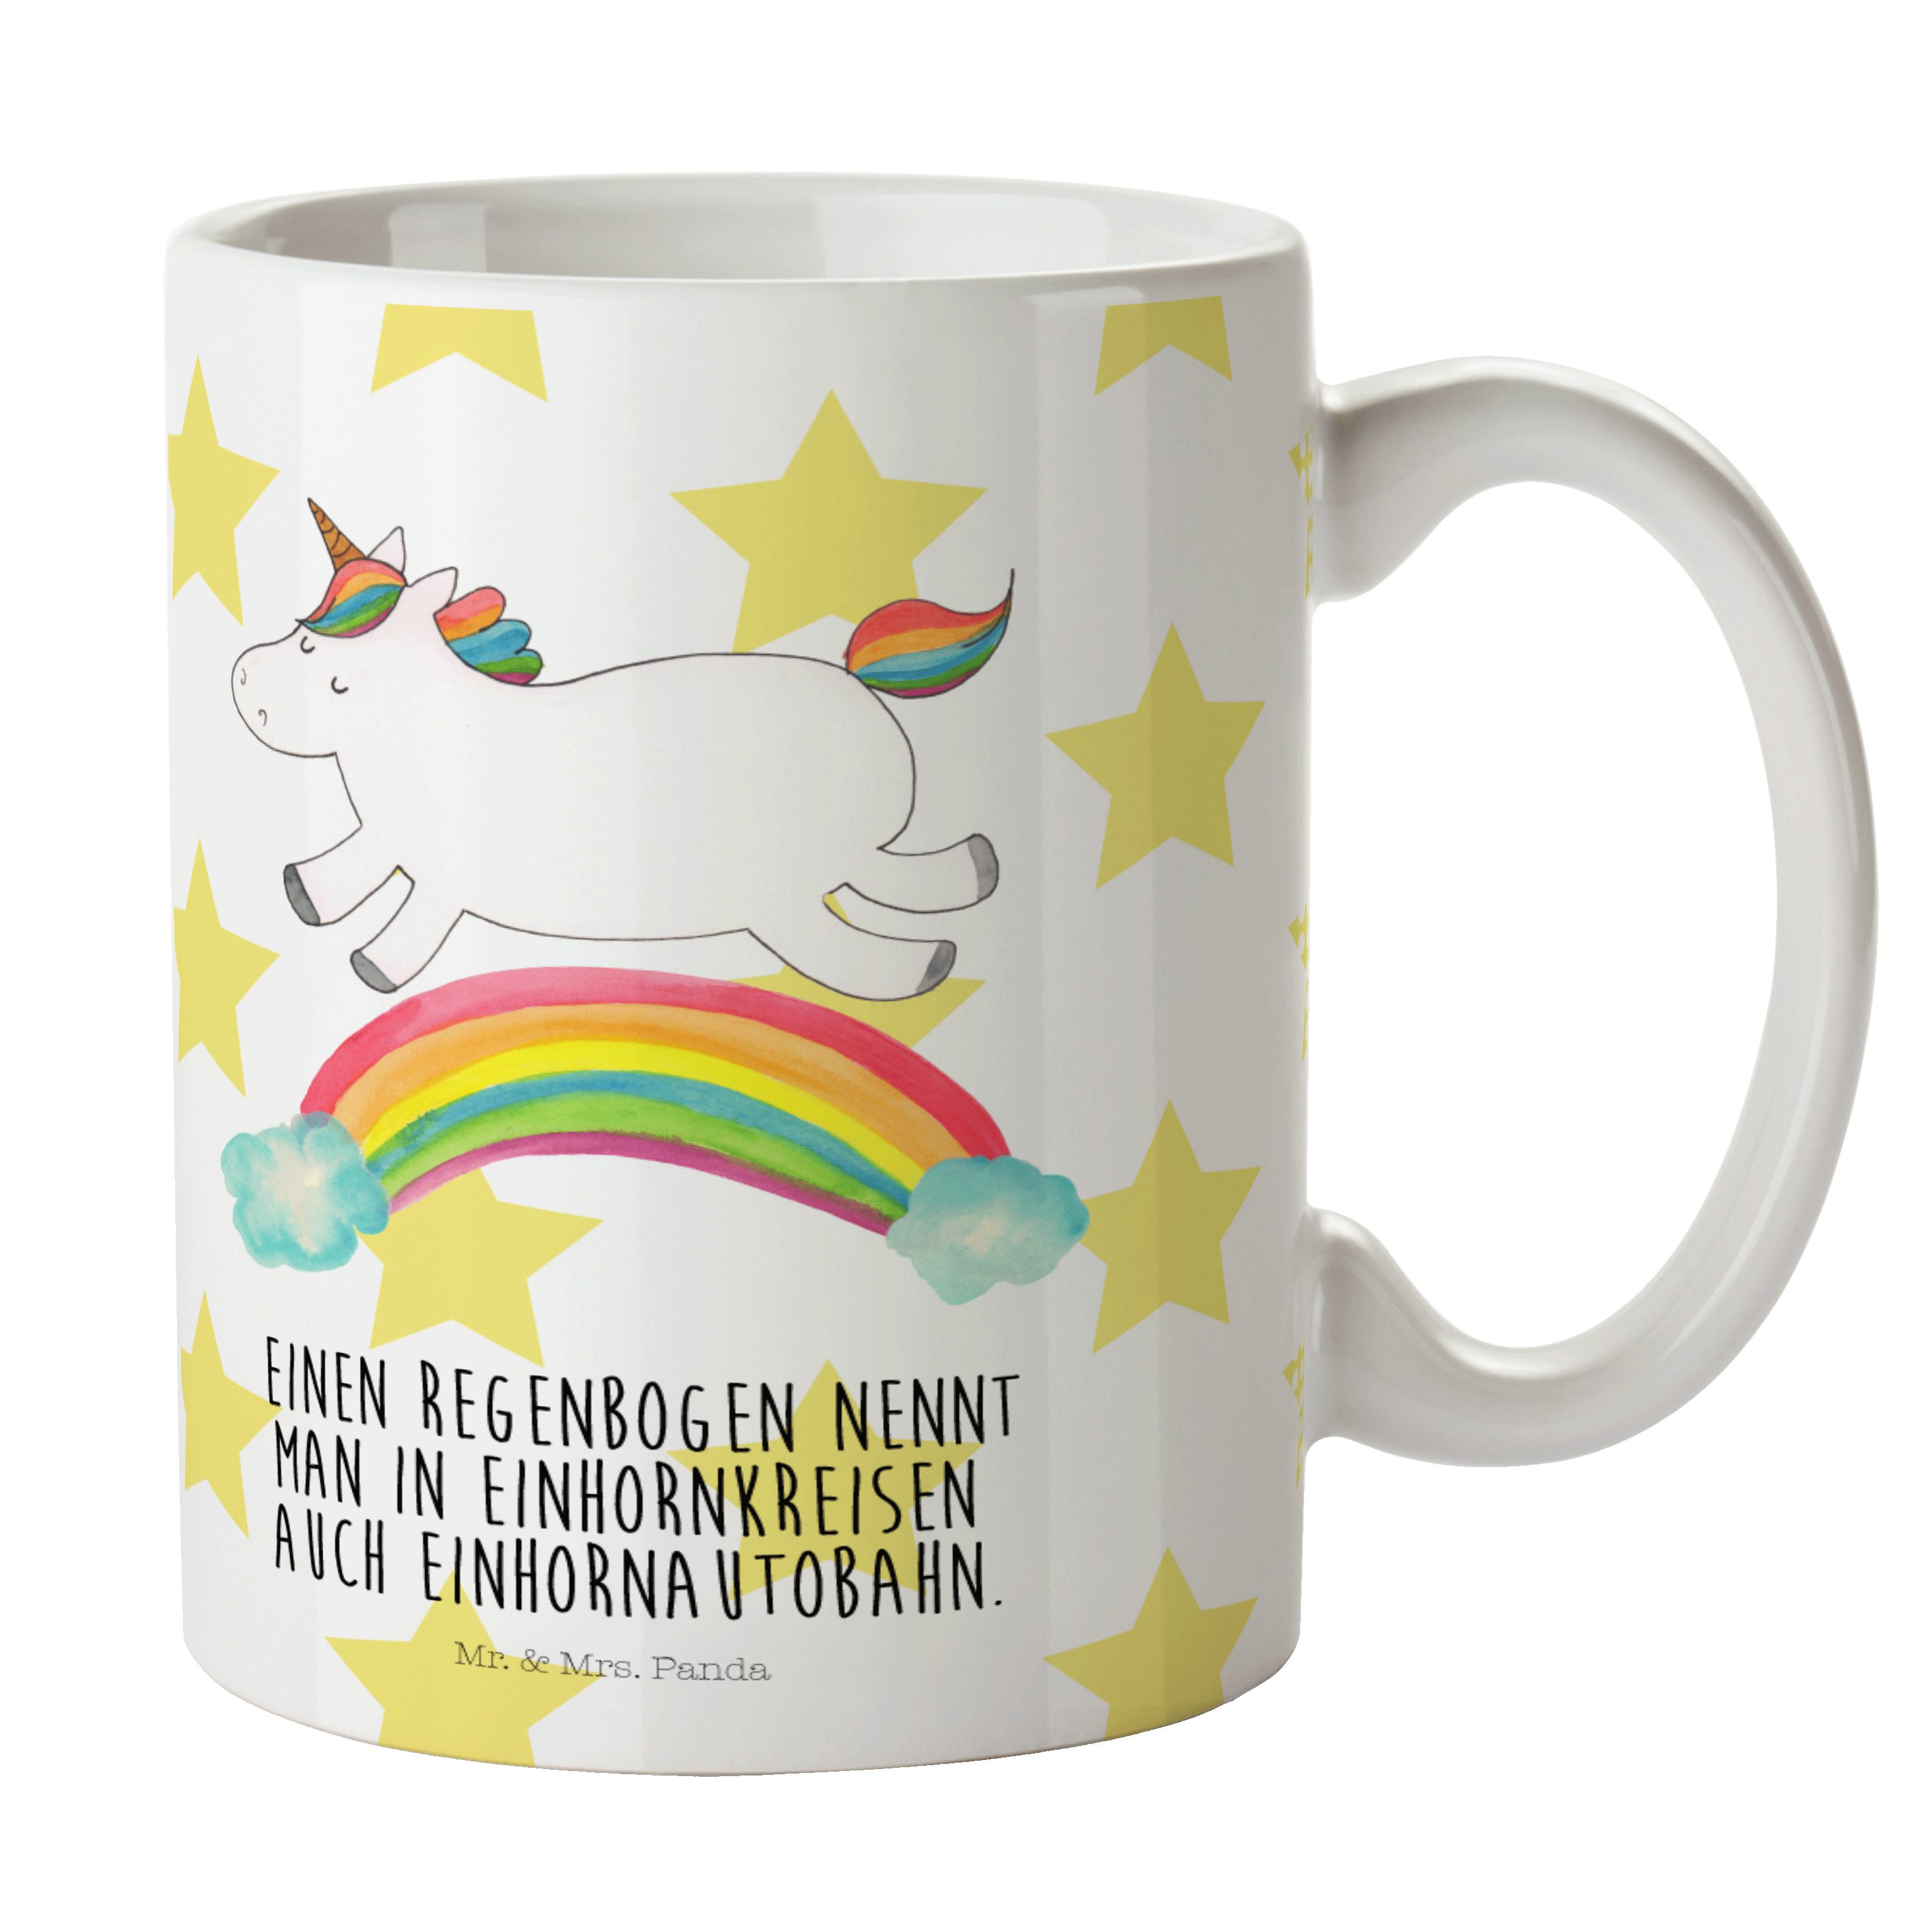 Mr. & Mrs. Panda Tasse Einhorn Regenbogen - Weiß - Geschenk, Unicorn, Pegasus, Geschenk Tass, Keramik